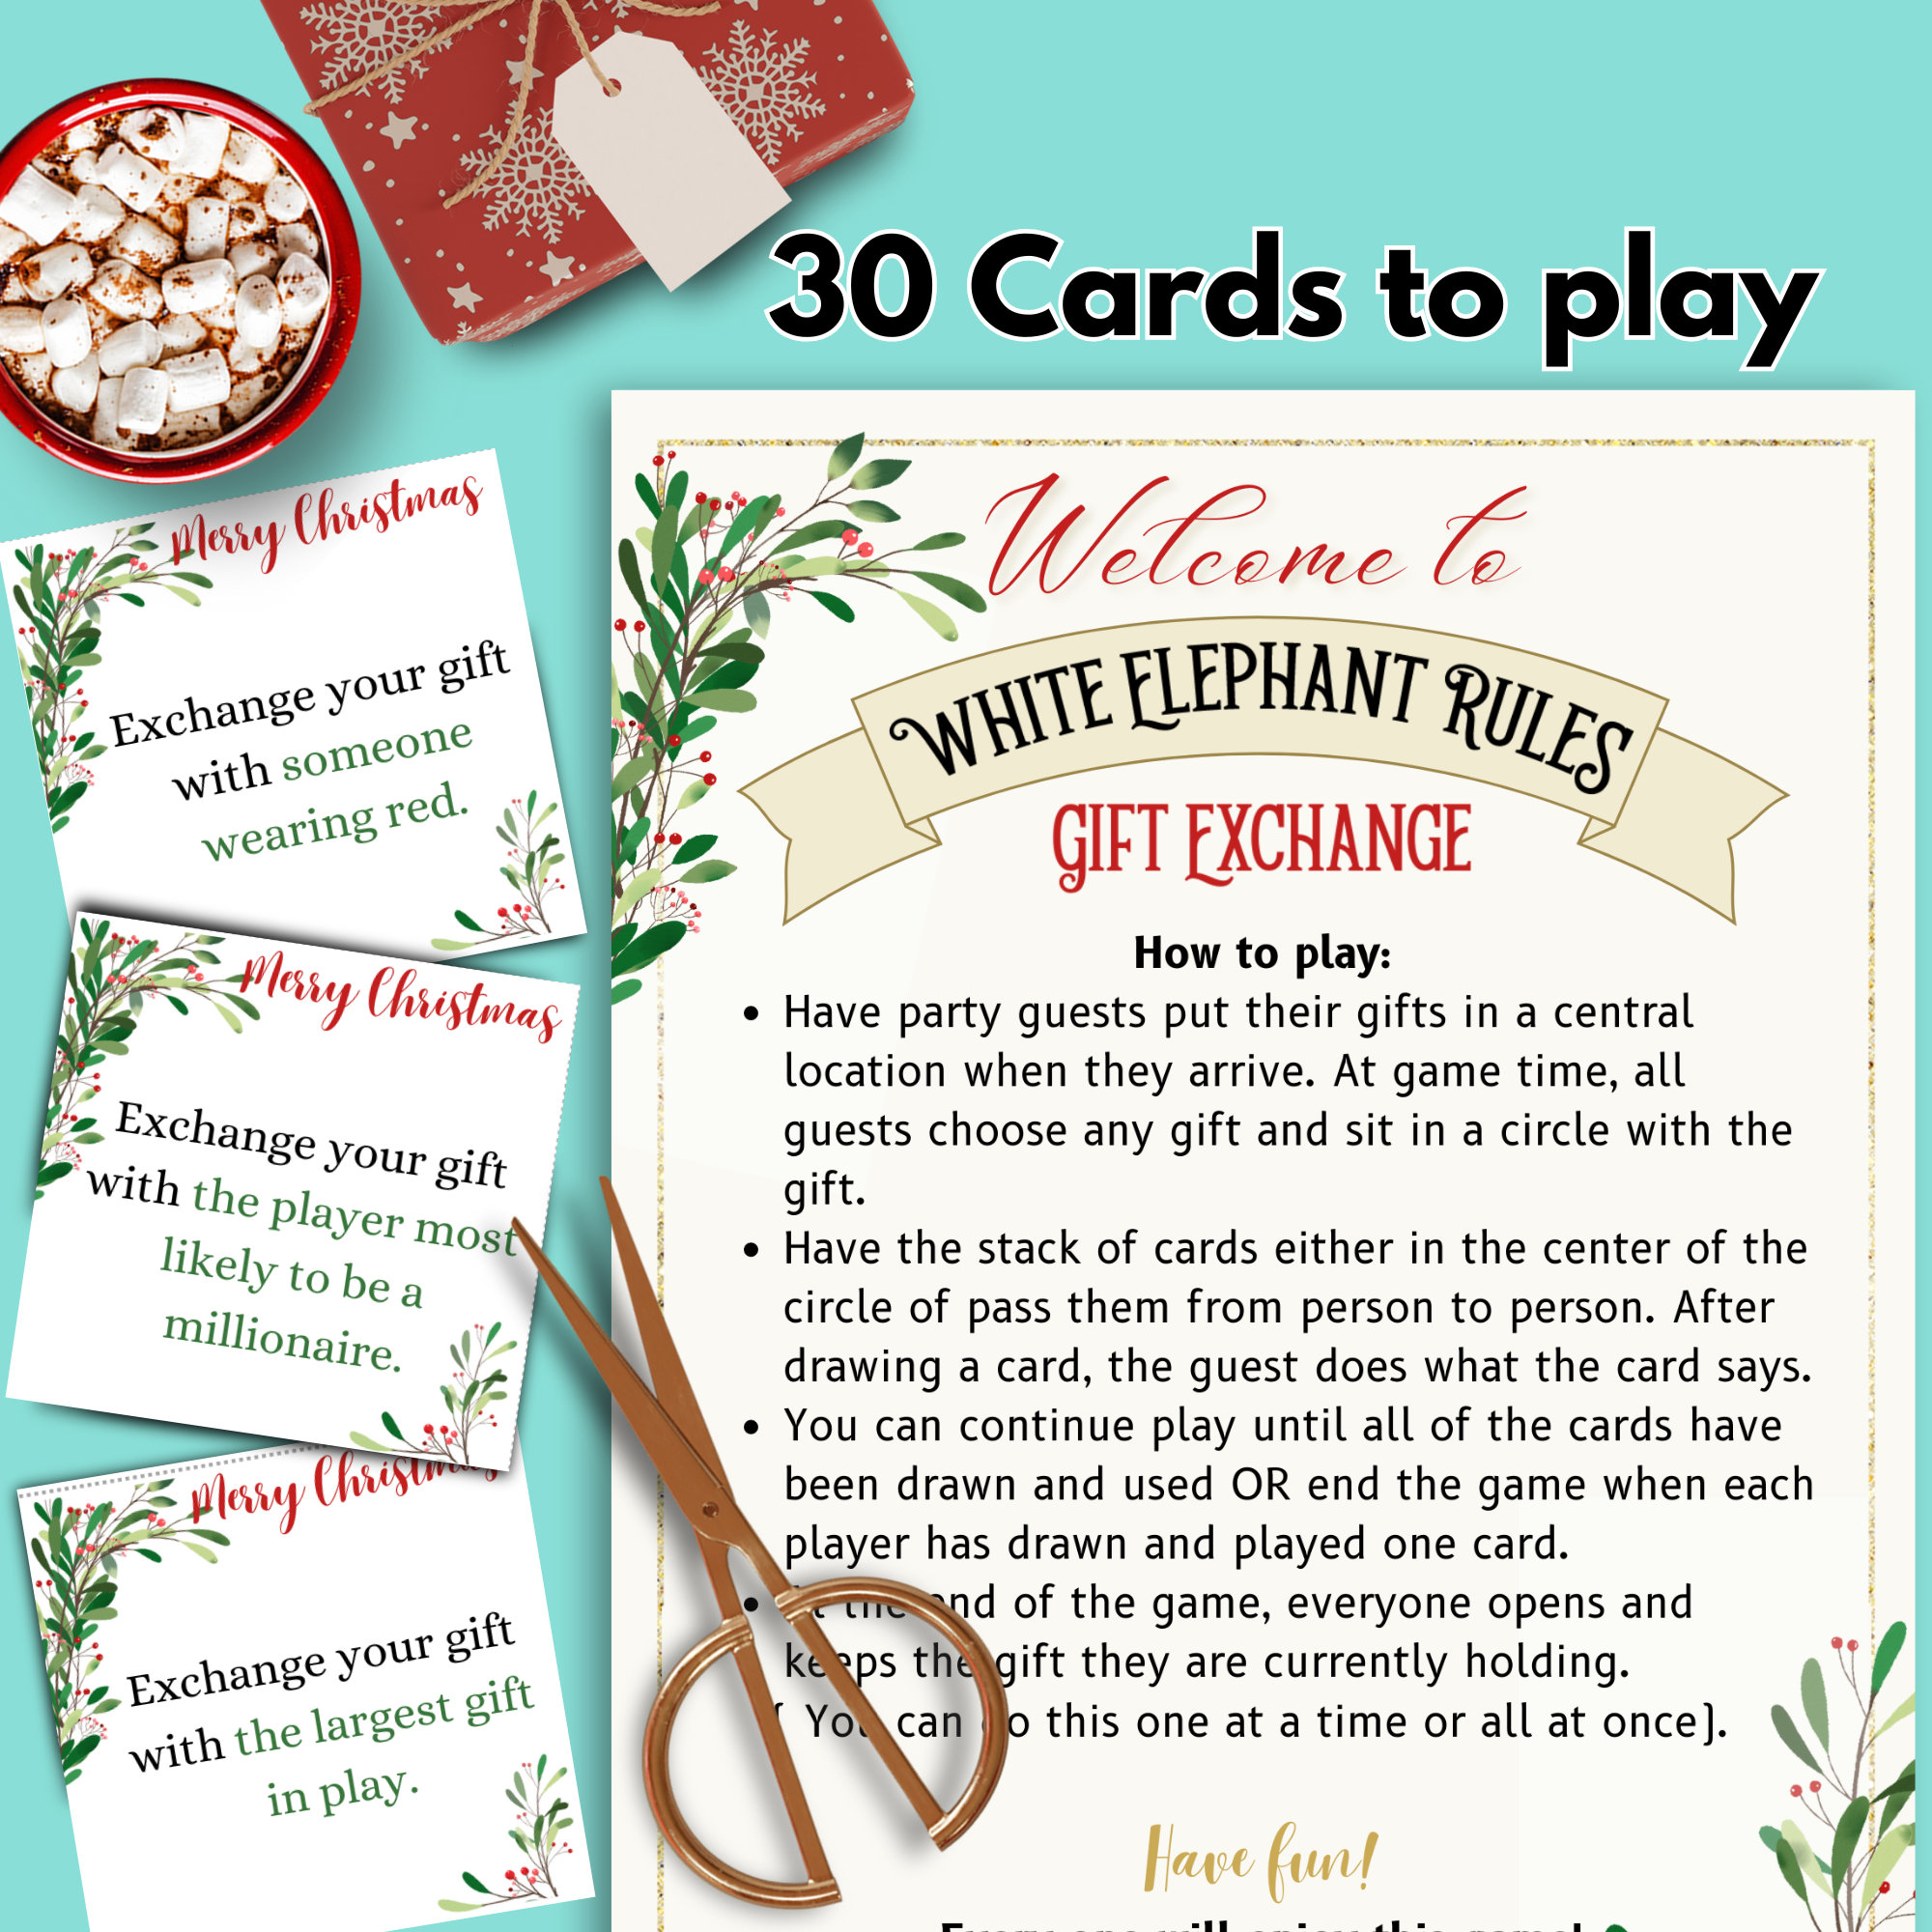 Christmas White Elephant Gift Exchange Rules Printable, Christmas